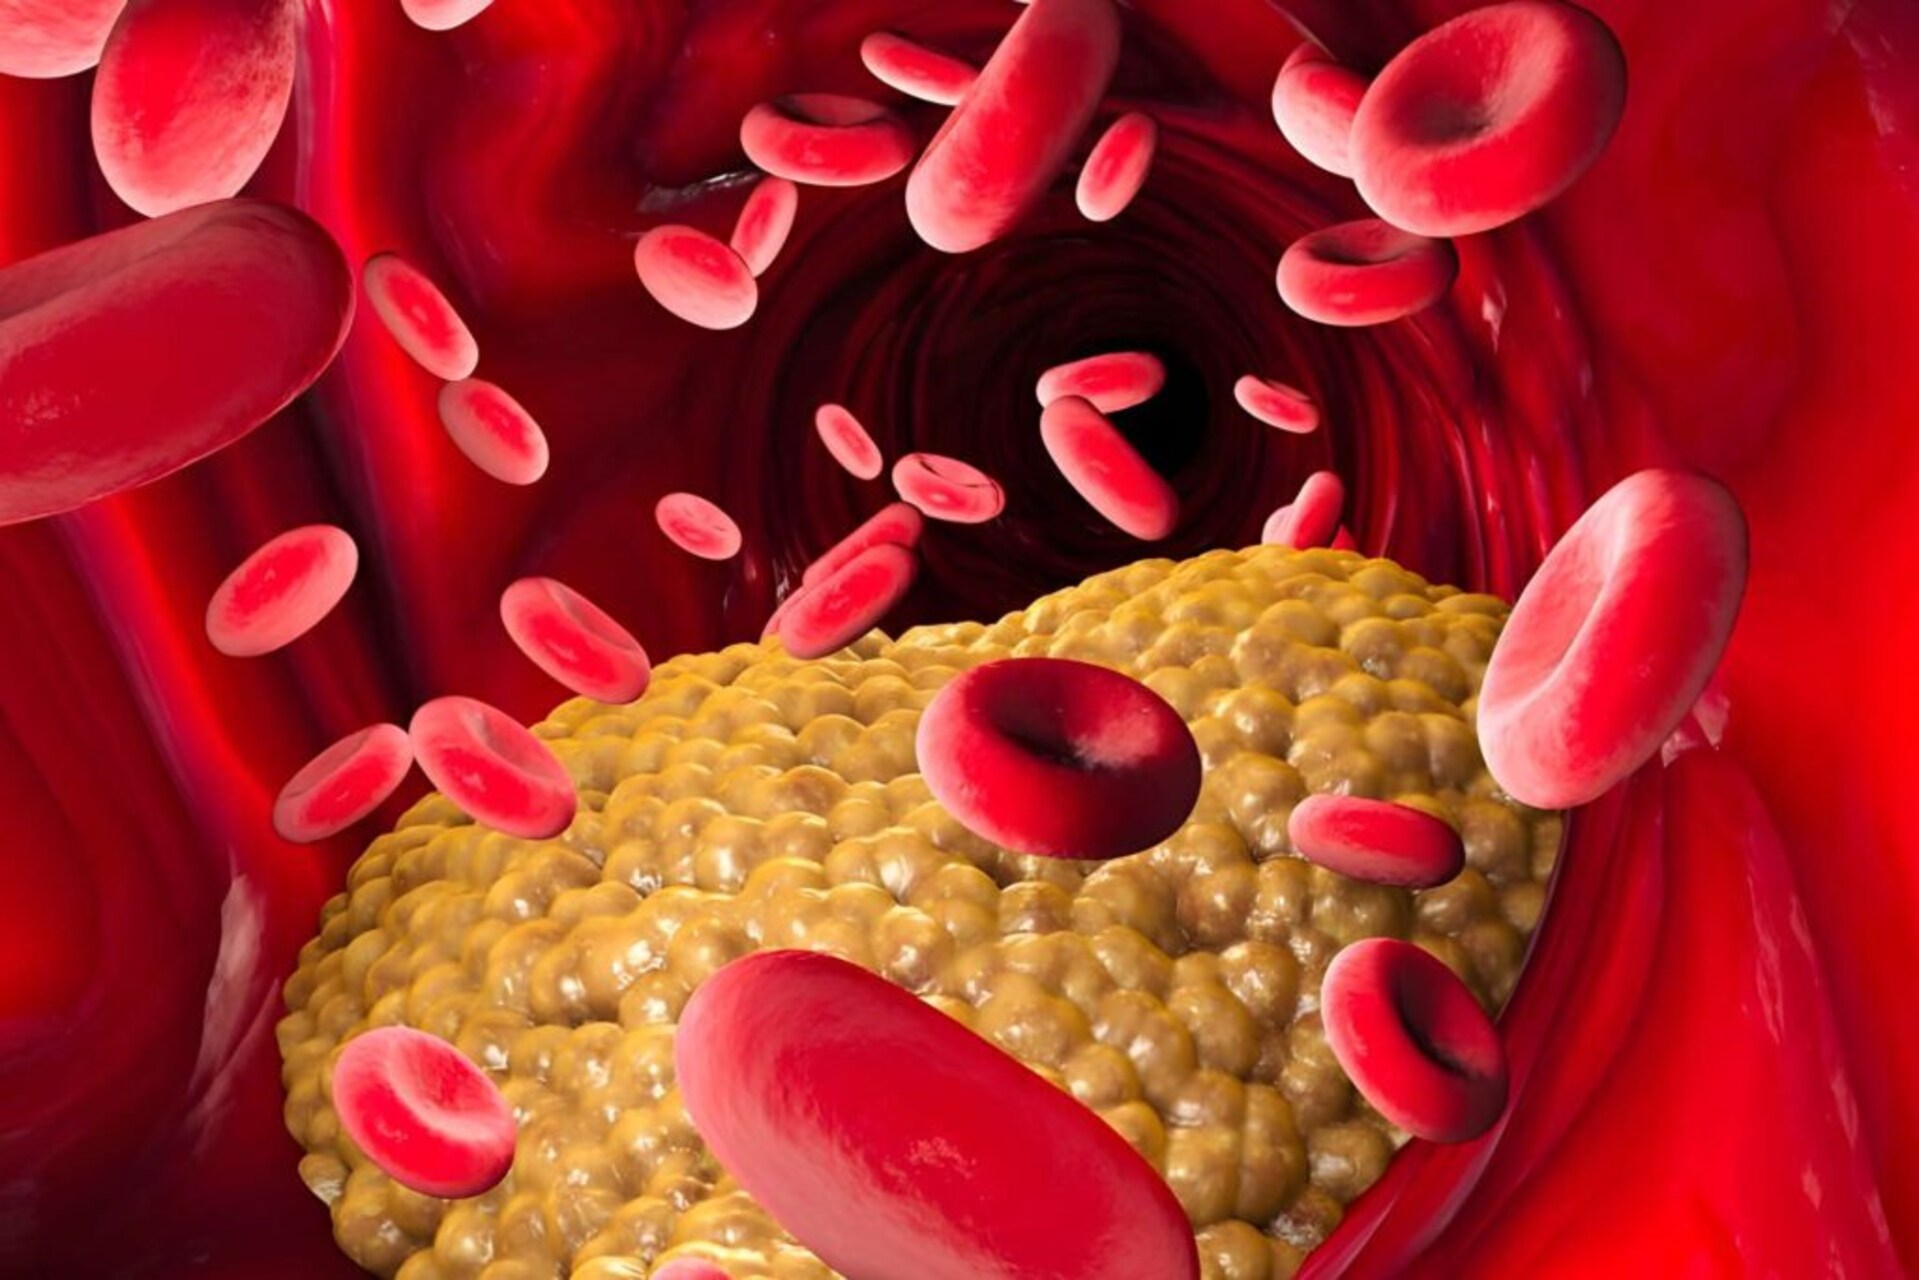 Trigliceridi: è da essi che proviene il colesterolo cattivo